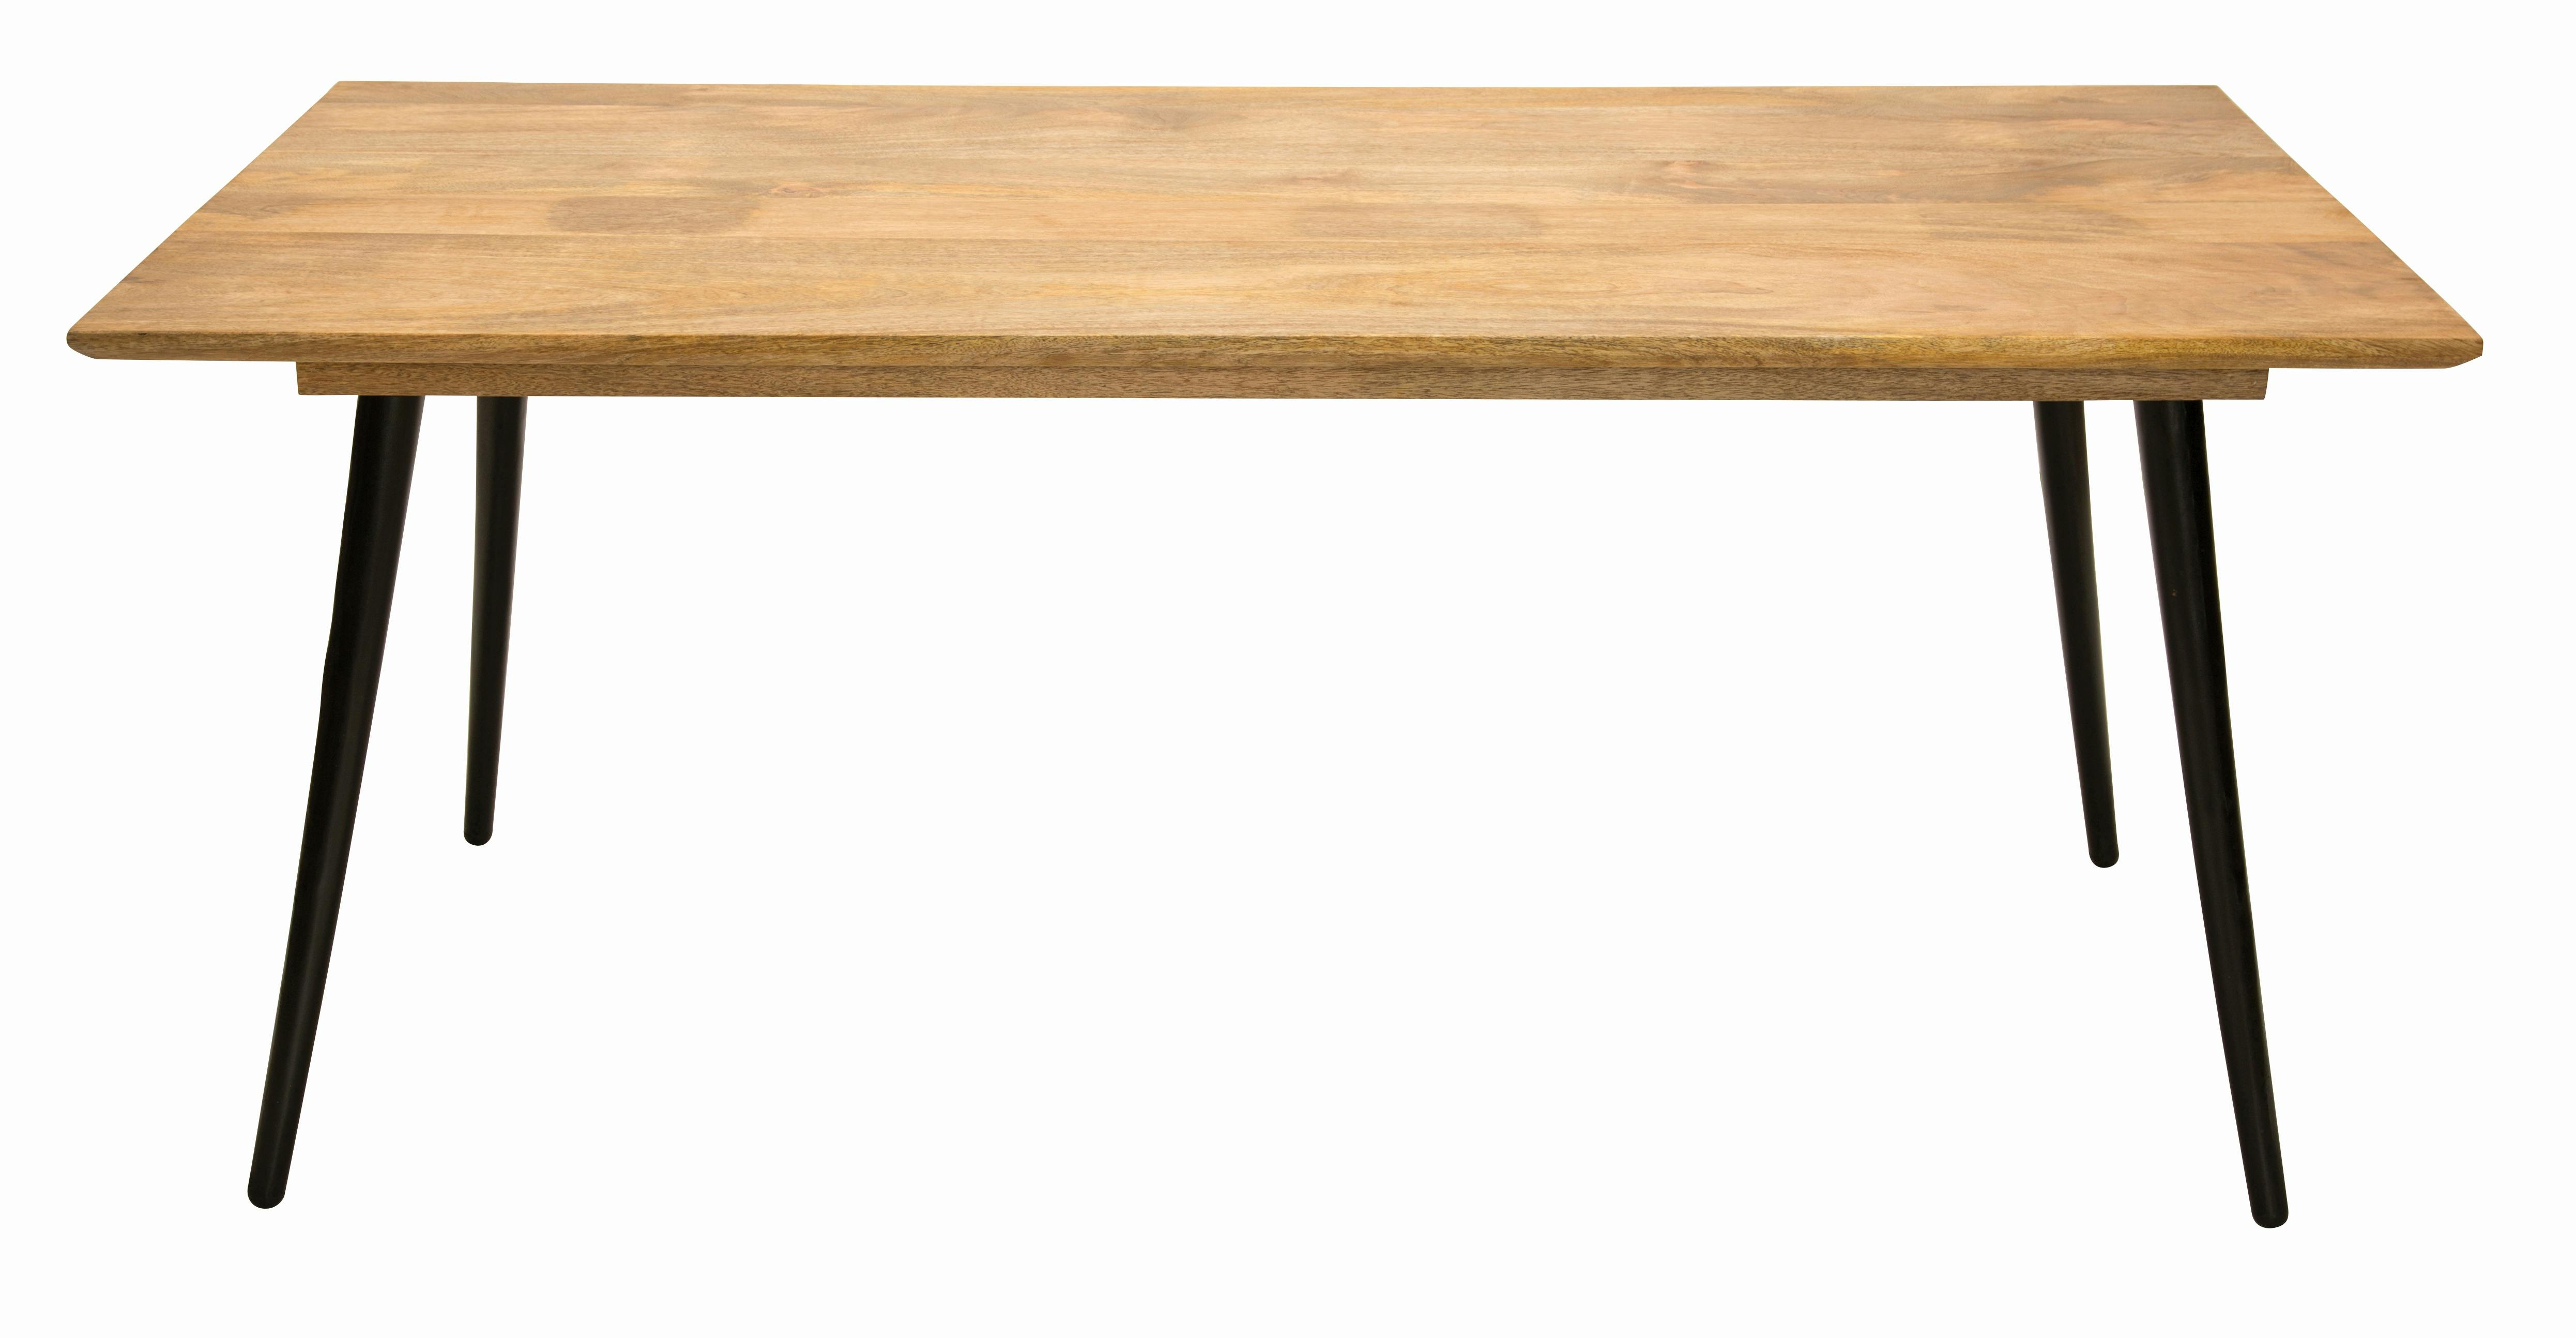 SIT Möbel Tisch Tom Tailor | 4 Metallbeine | Platte Mangoholz | natur | B  180 x T 90 x H 77 cm | 12817-01 | Serie TOM TAILOR | METRO Marktplatz